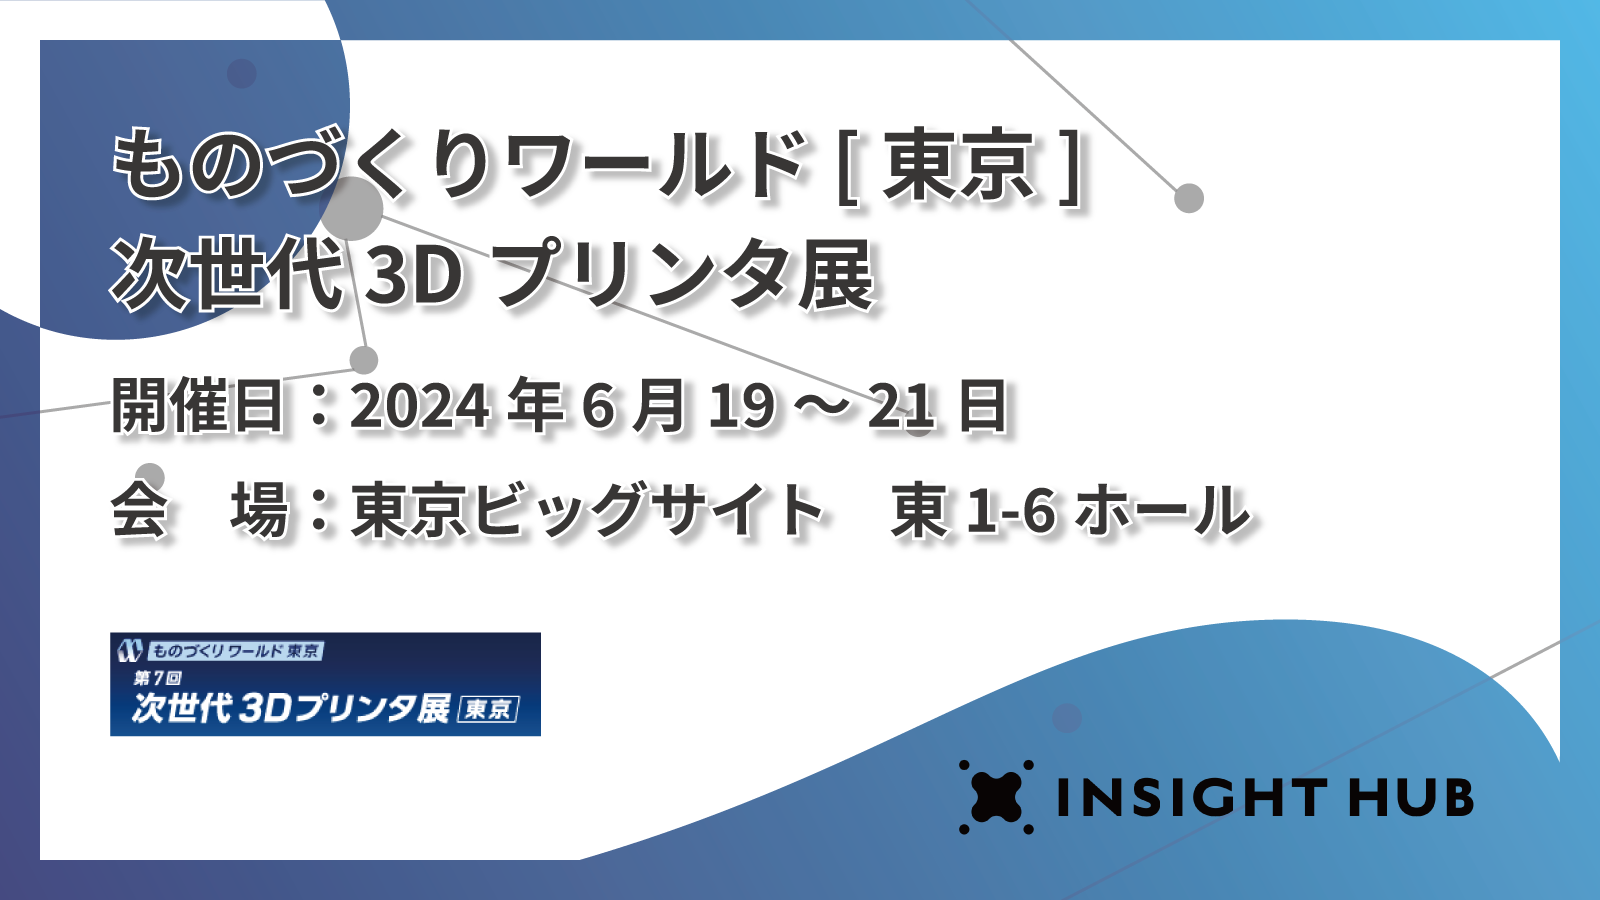 ものづくりワールド[東京]次世代3Dプリンタ展